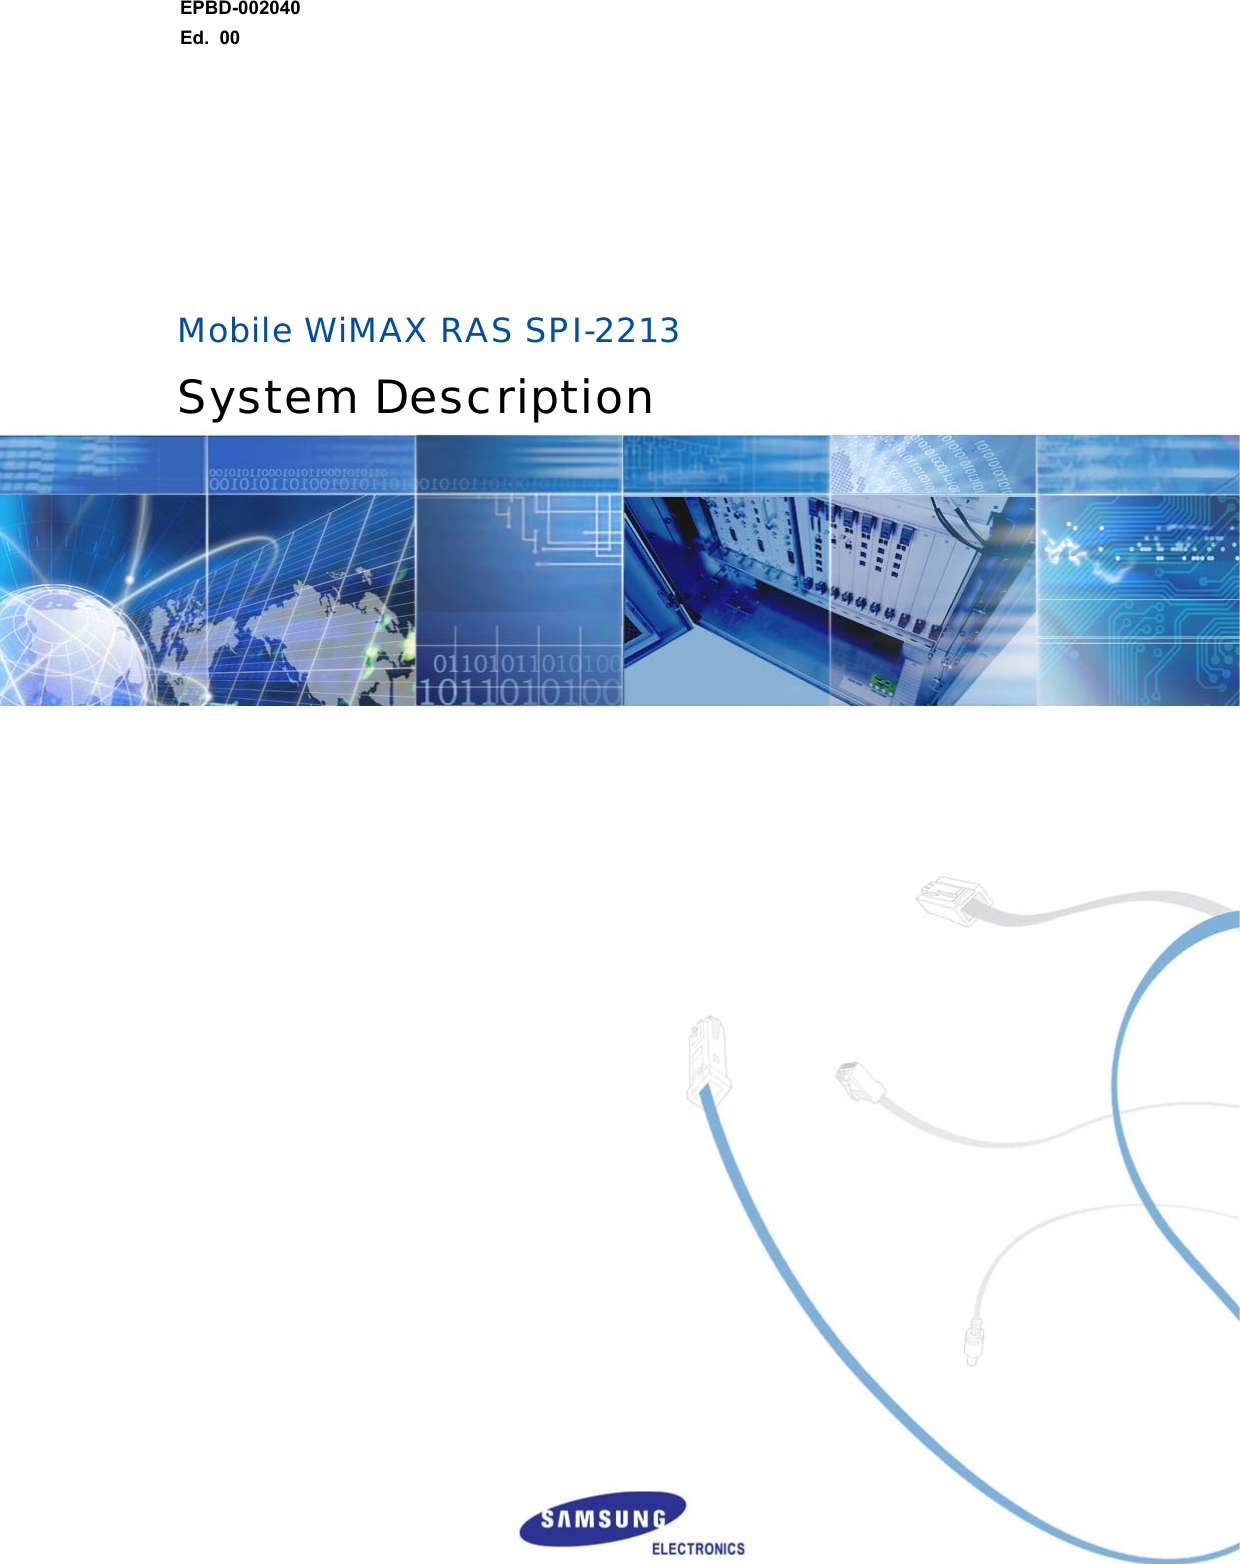 EPBD-002040 Ed.  00          Mobile WiMAX RAS SPI-2213 System Description   